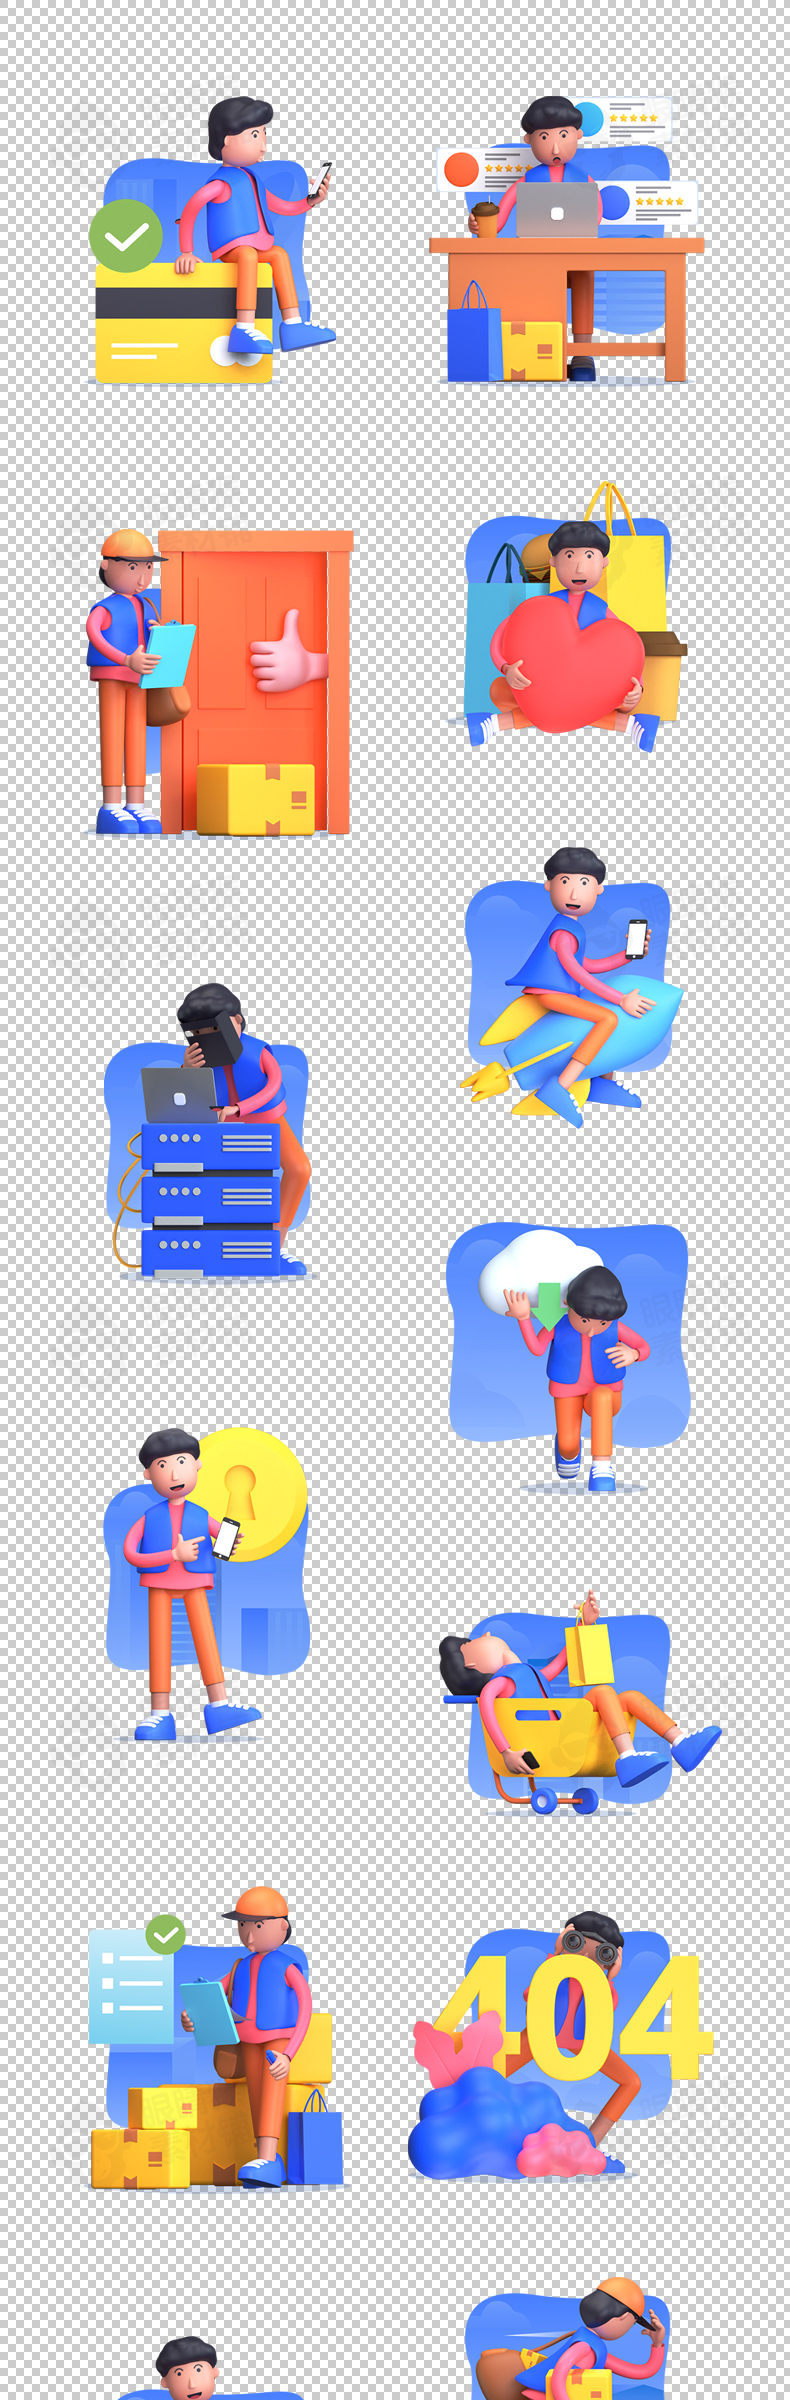 21款呆呆3D人物APP闪屏空状态壁纸落地页插画png高清设计素材文件-人物插画、场景插画、插画、插画风格、概念创意、状态页、趣味漫画-到位啦UI